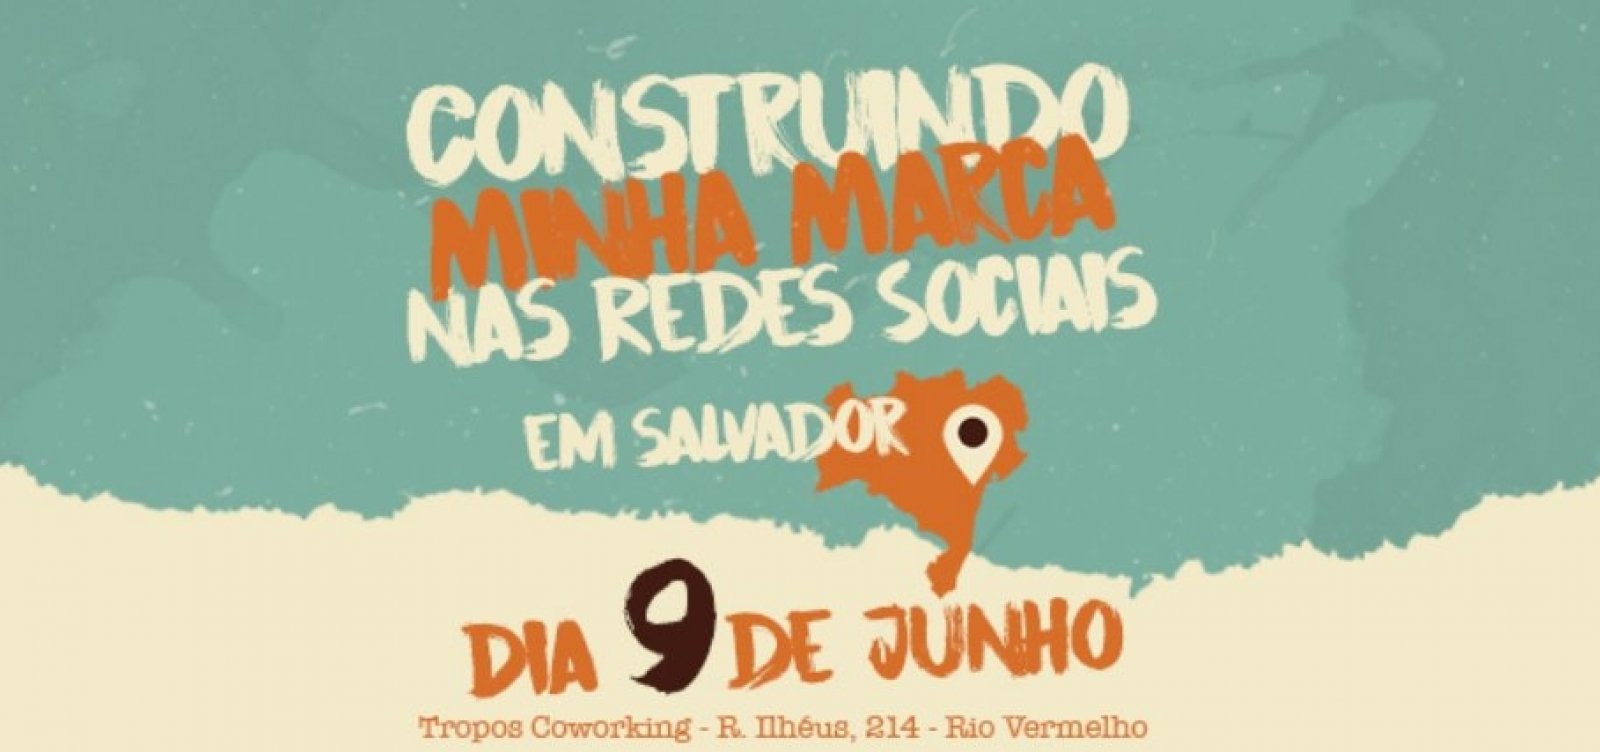  Workshop sobre construção de marca nas redes sociais é sediado em Salvador